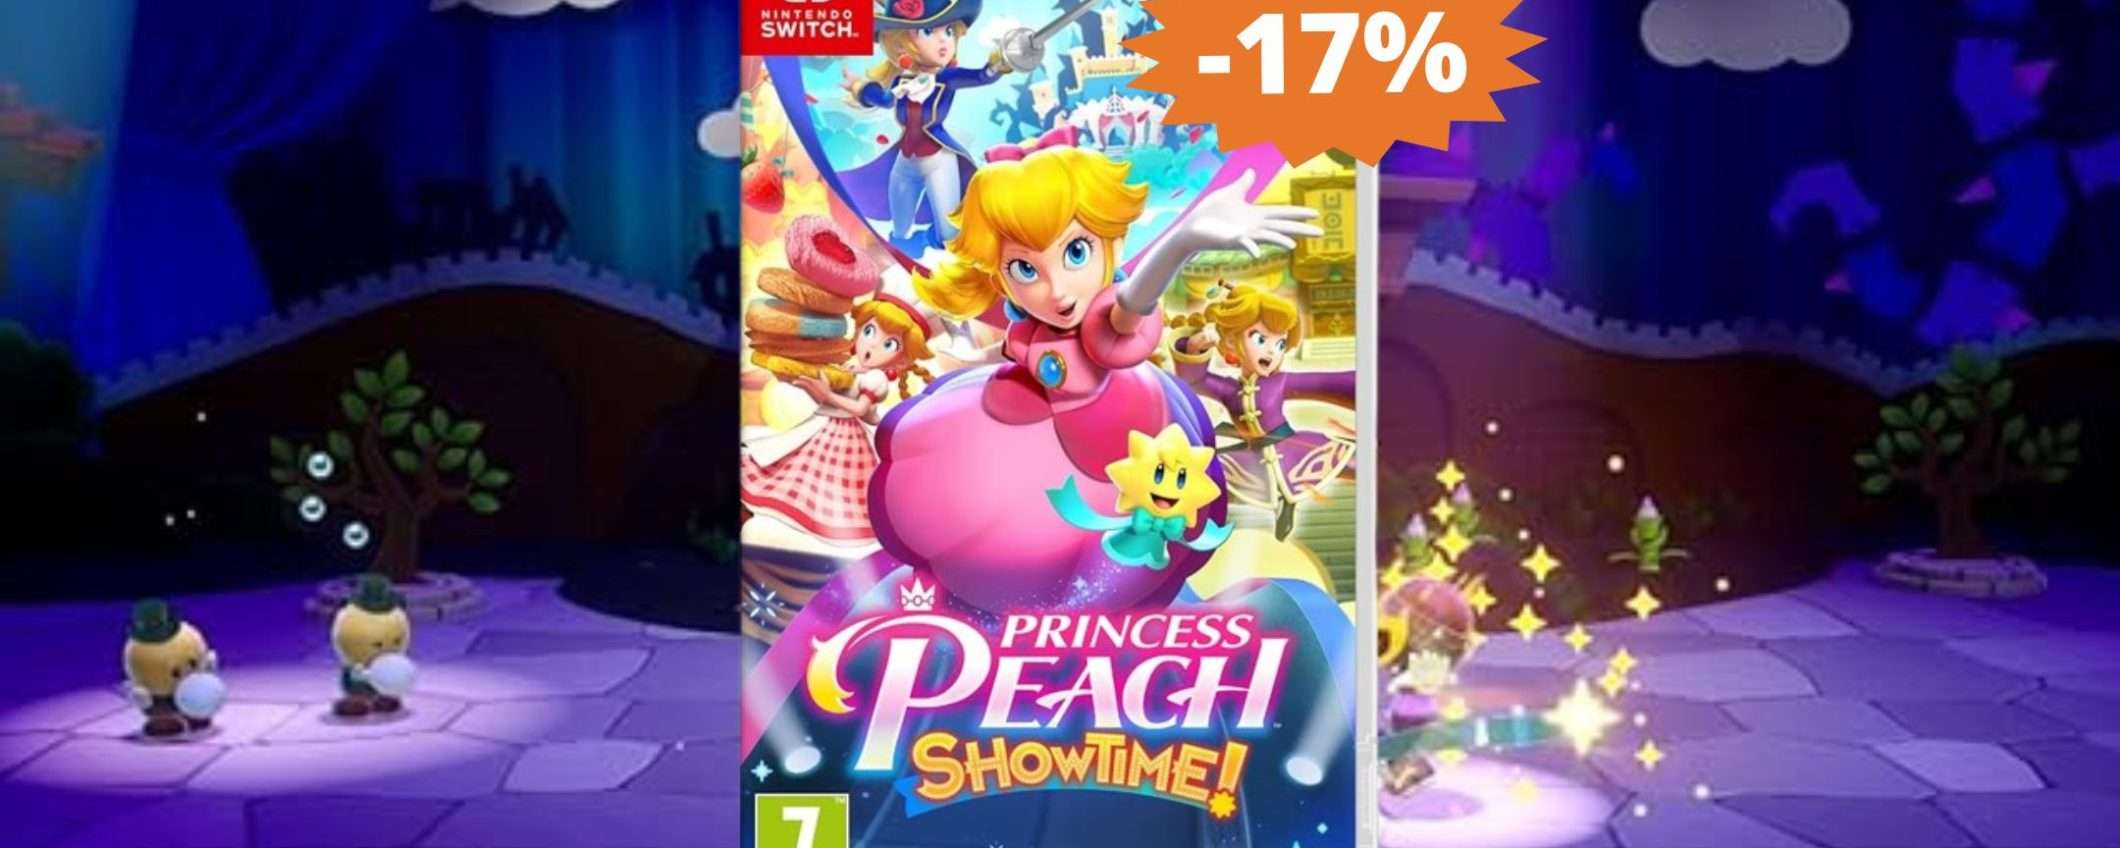 Princess Peach Showtime: puro DIVERTIMENTO in super sconto